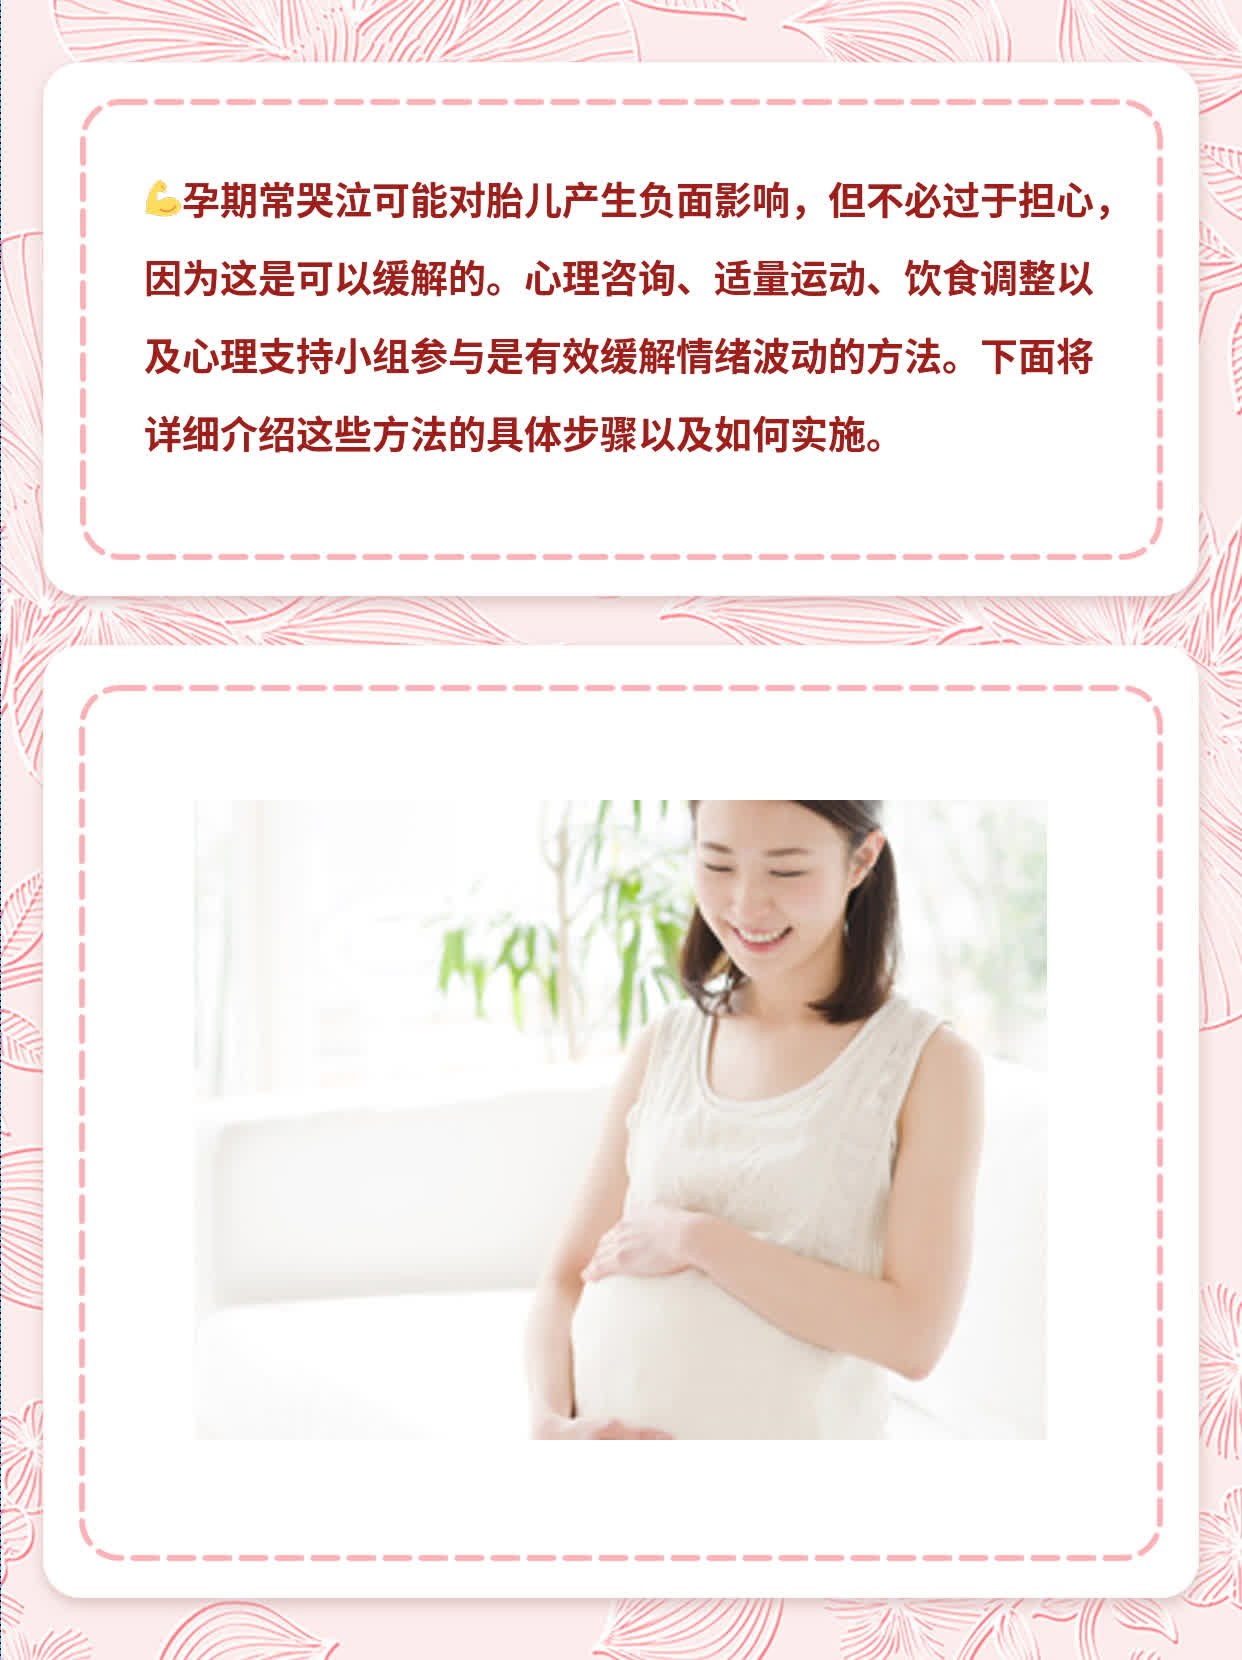 「孕期常哭泣」对胎儿的影响及缓解方法